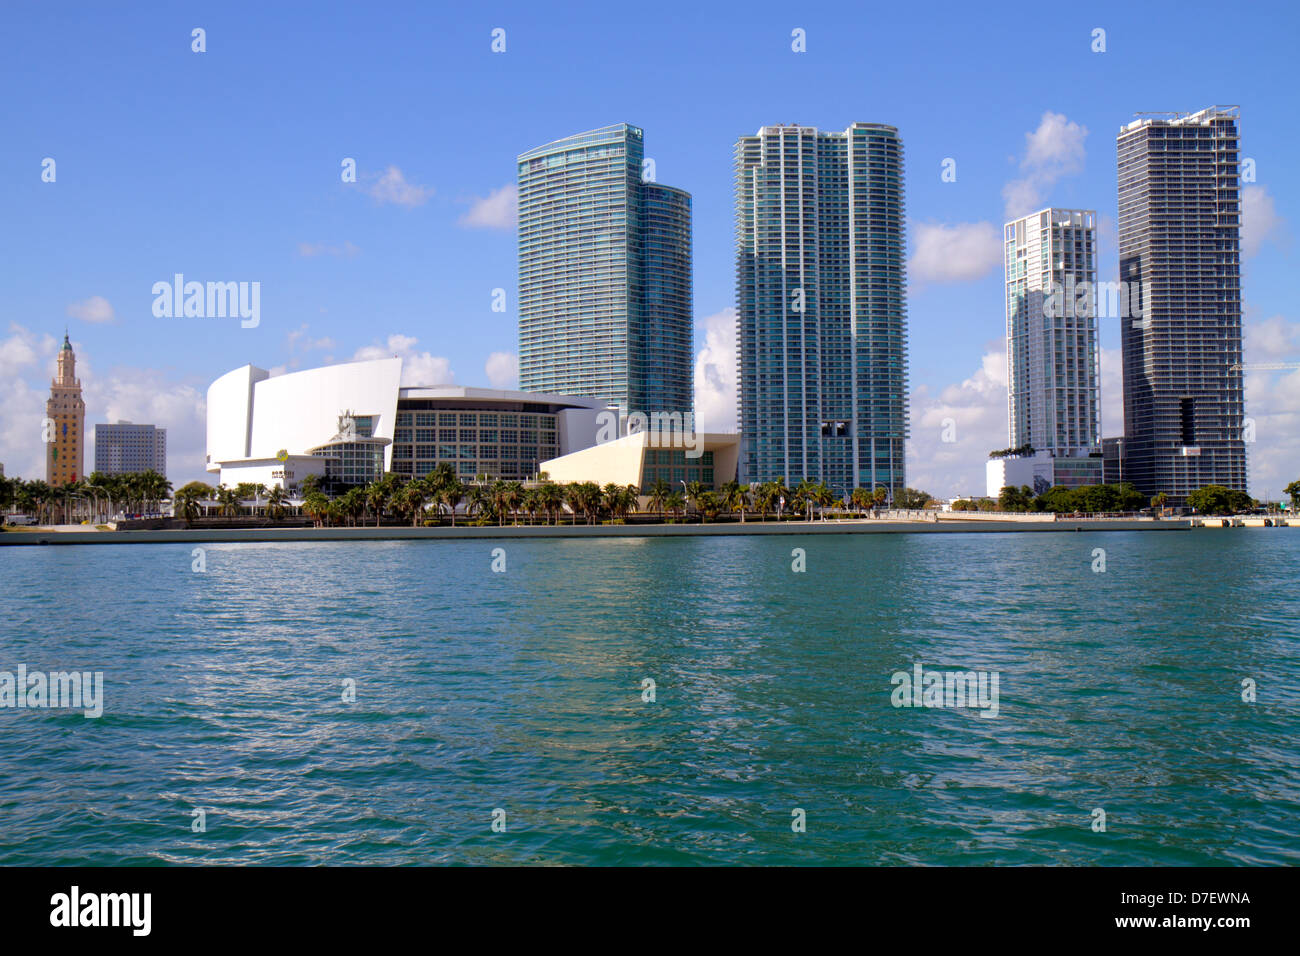 Miami Florida,Biscayne Bay,Biscayne Boulevard,horizon,eau,gratte-ciel,gratte-ciel de hauteur gratte-ciel bâtiment immeubles condominium ap Banque D'Images